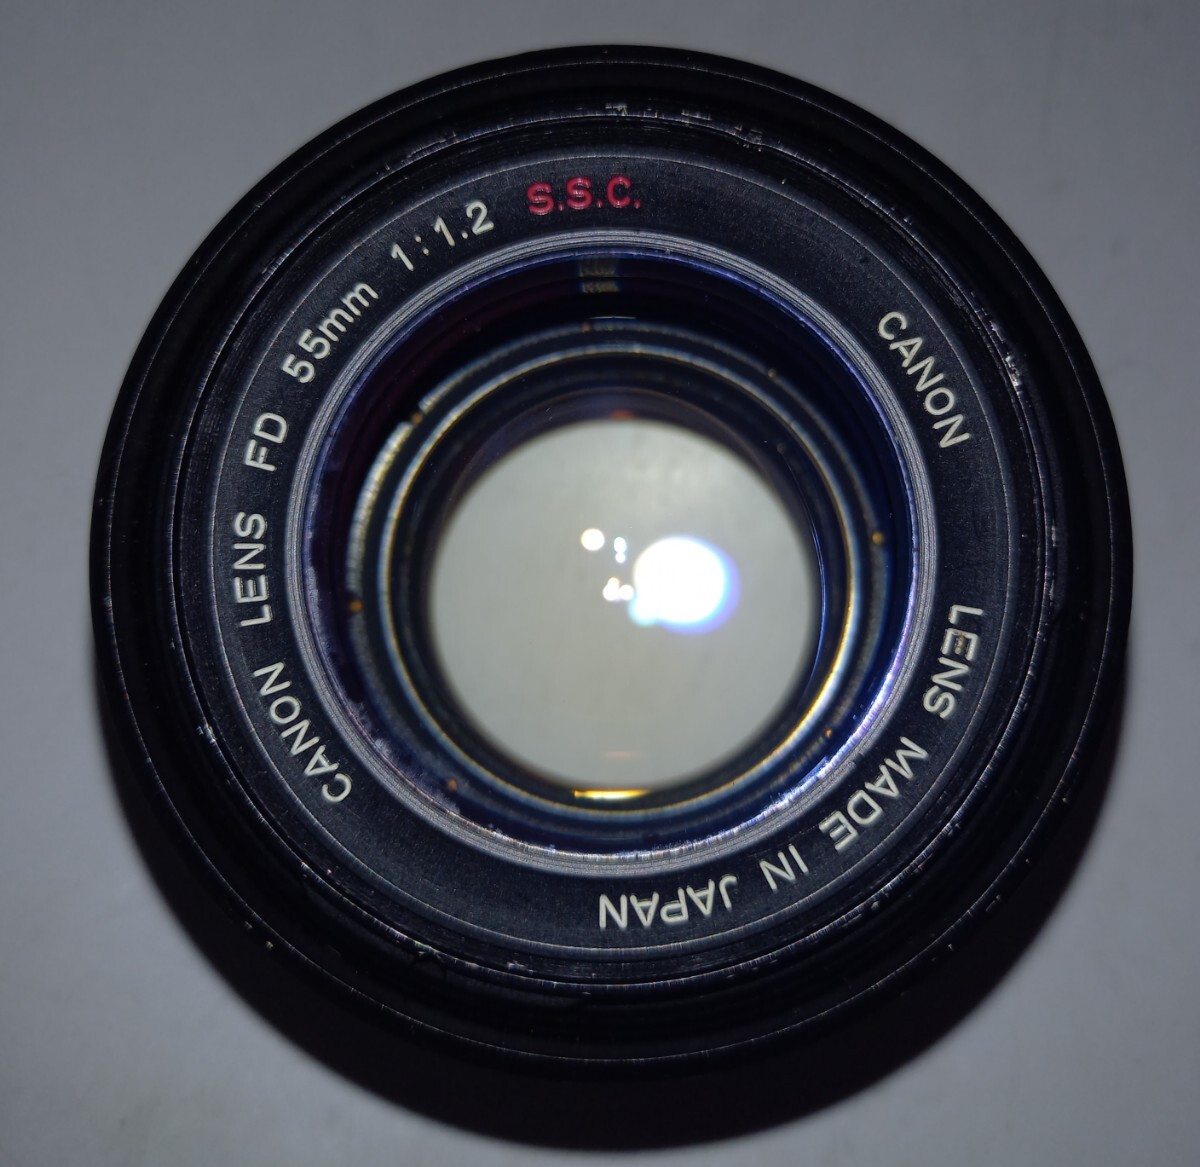 ■ Canon LENS FD 55mm F1.2 S.S.C. カメラ レンズ 単焦点 マニュアルフォーカス キャノン_画像7